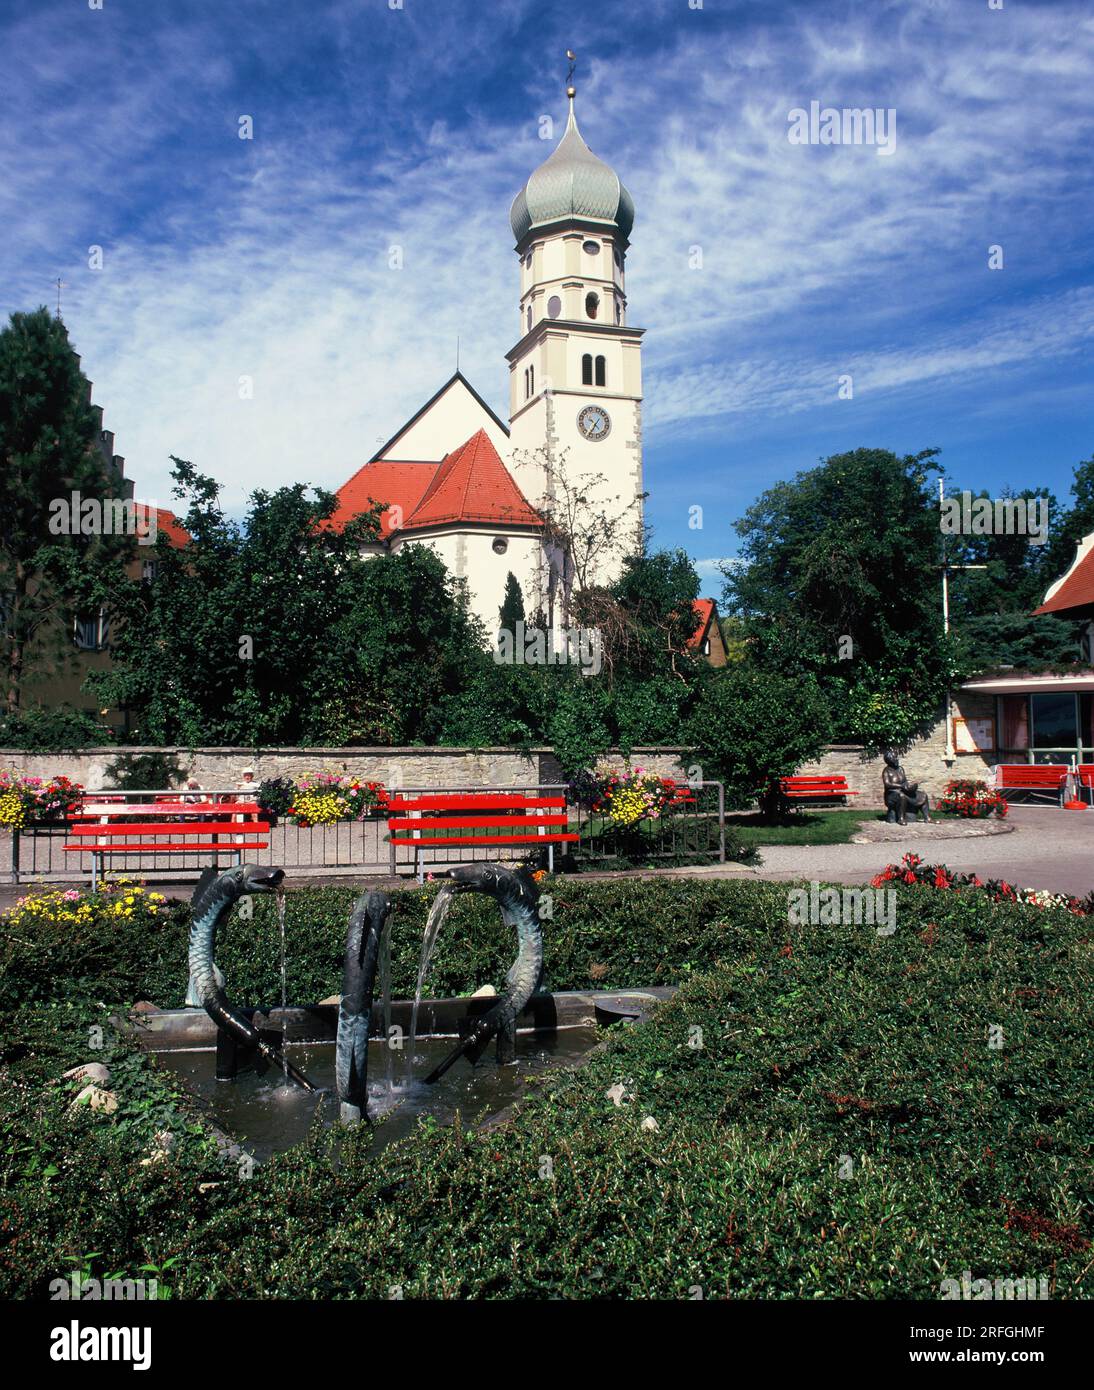 Germania. Regione del lago di Costanza. Wasserburg am Bodensee. Chiesa di San Giorgio, giardini e fontana. Foto Stock